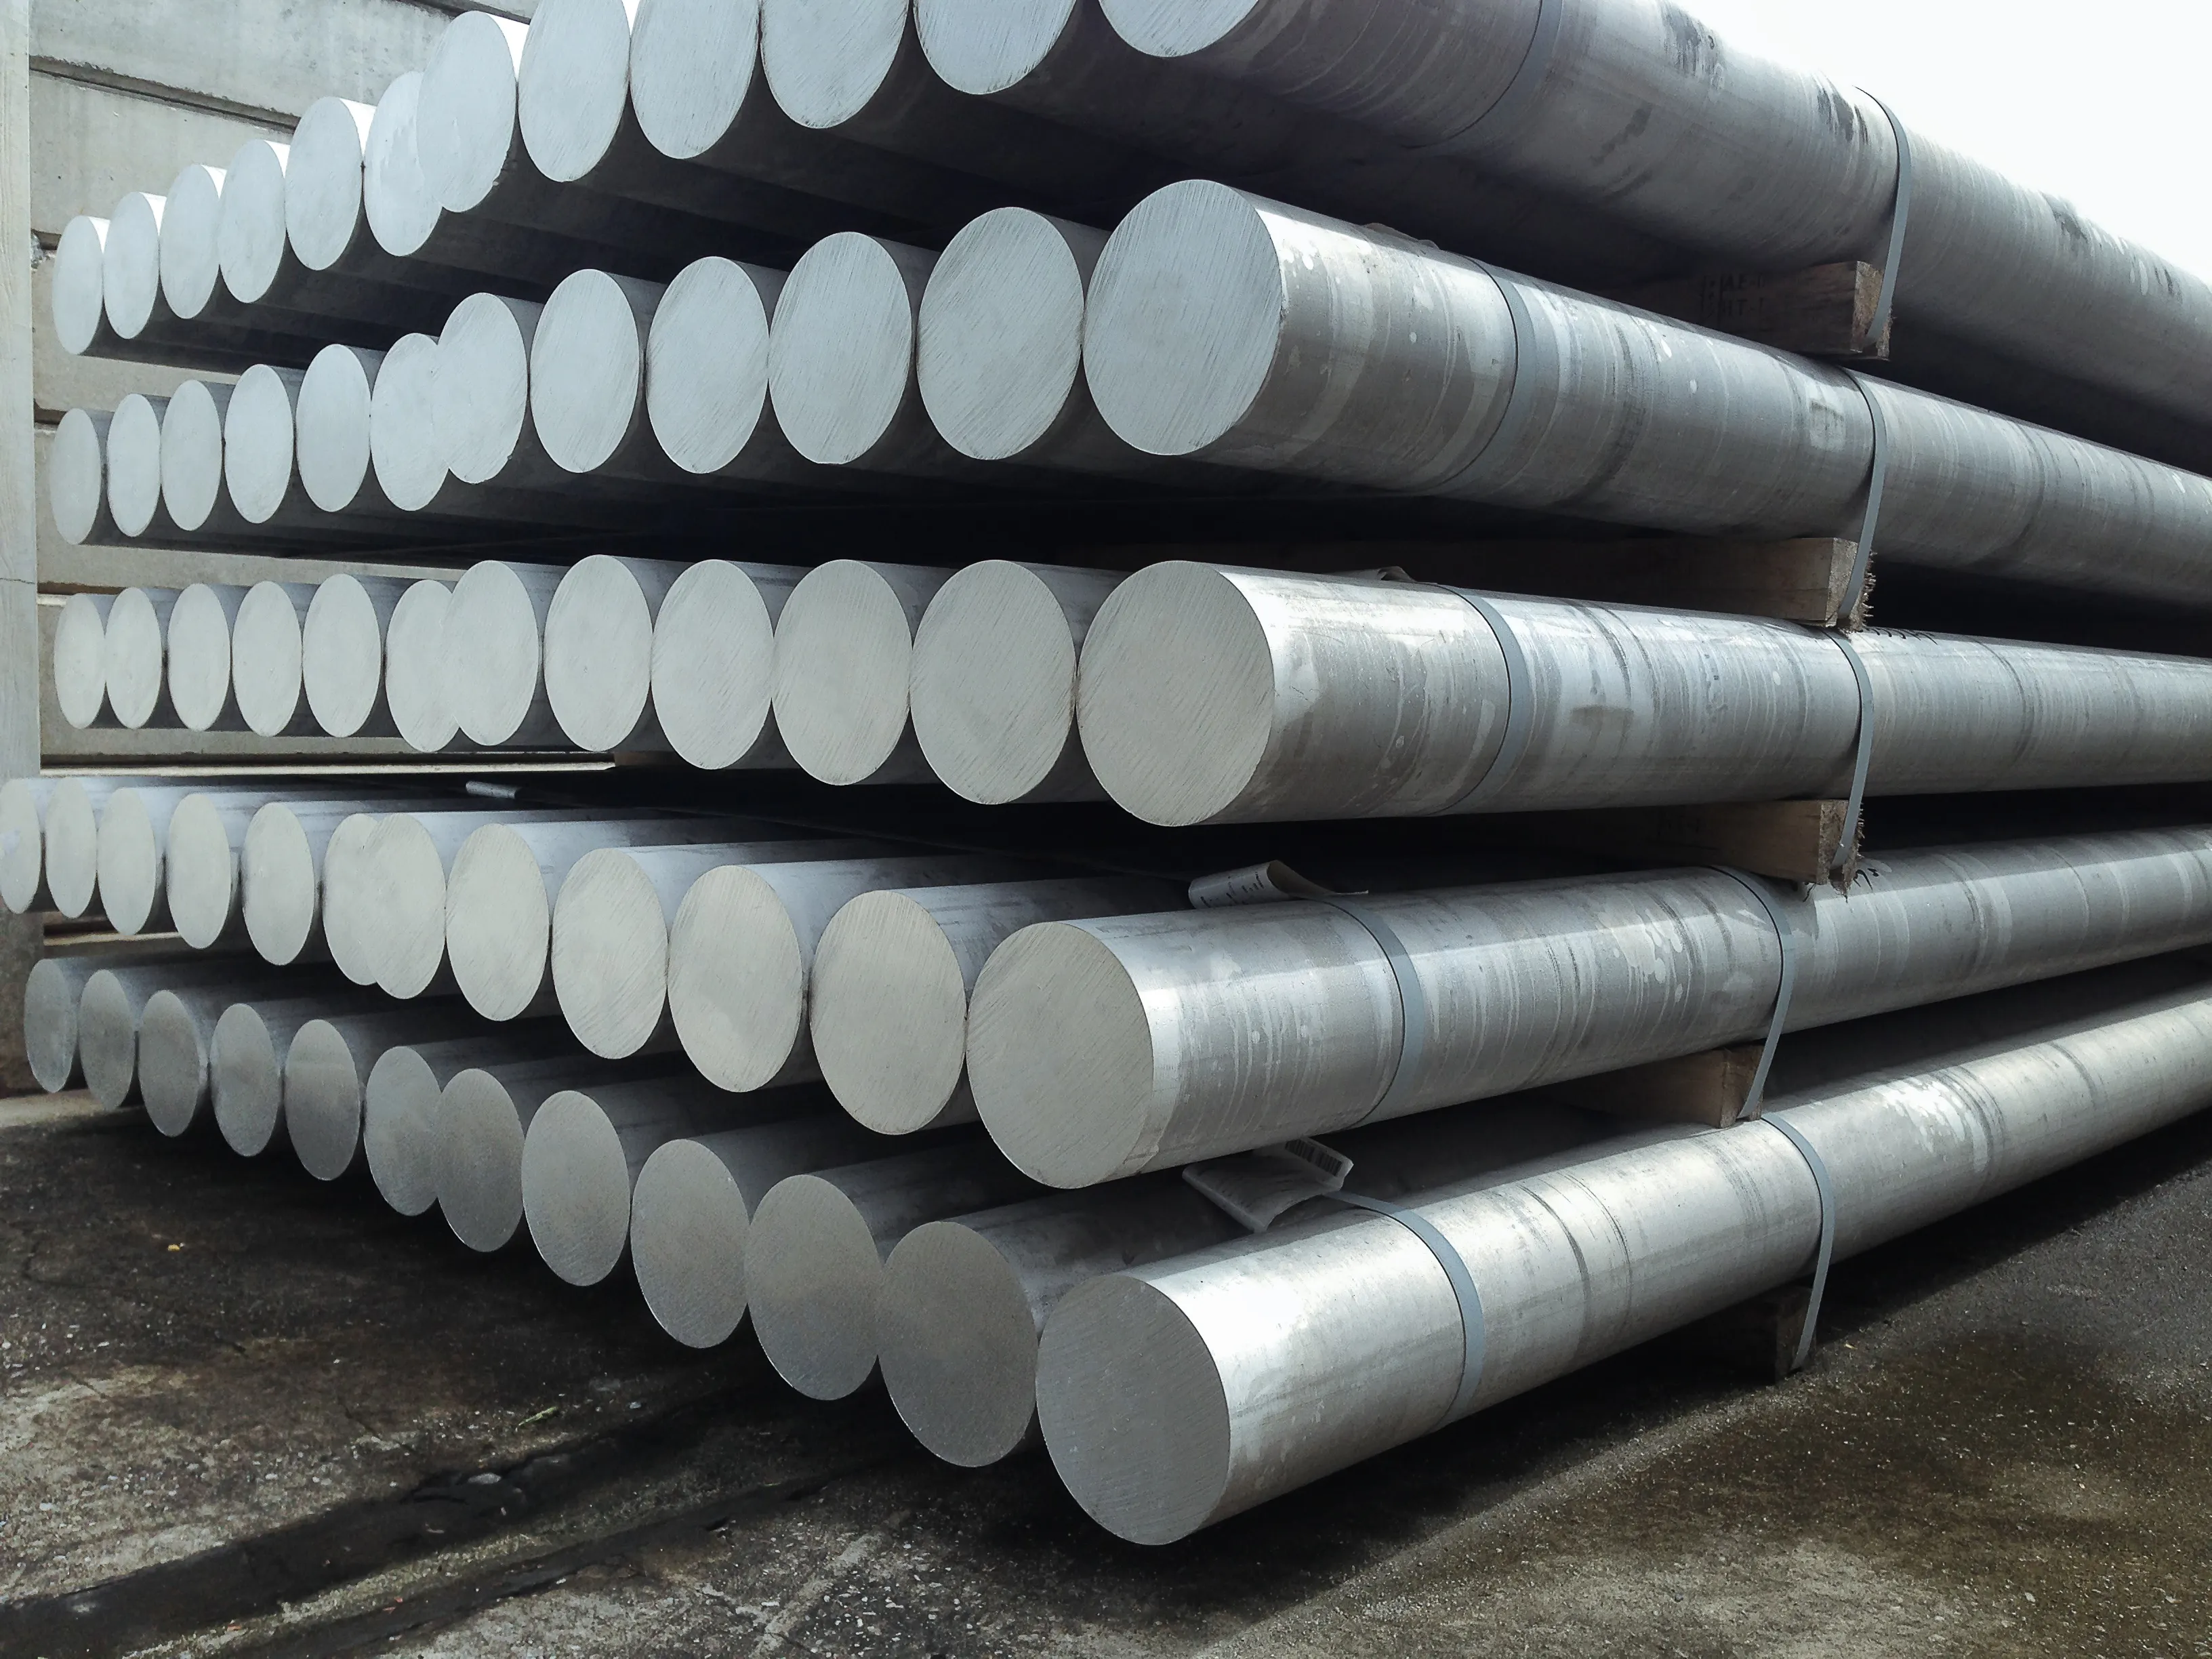 Yüksek karbon kalıp çelik malzemeler levhalar 1.2746 45 NiCrMoV 16-6 hurda tüpleri fabrikatör fiyat vanadyum